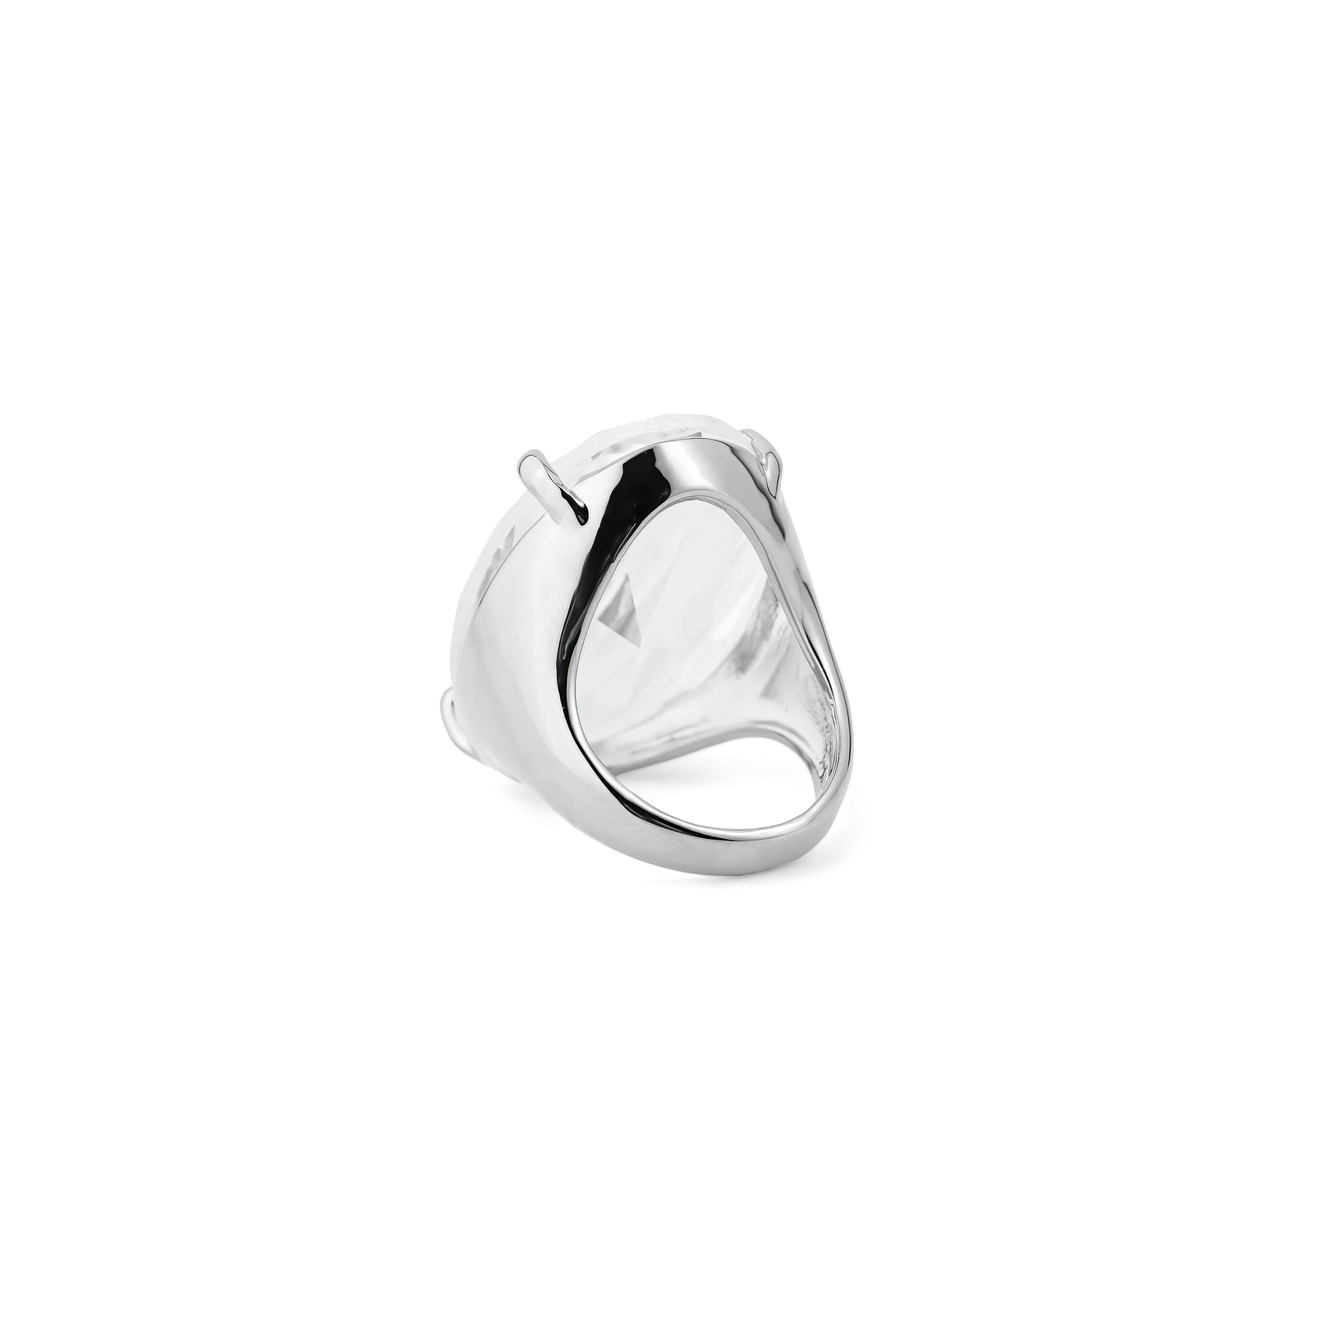 Herald Percy Серебристое кольцо с овальным кристаллом herald percy золотистая цепочка с подвеской прямоугольником с кристаллом